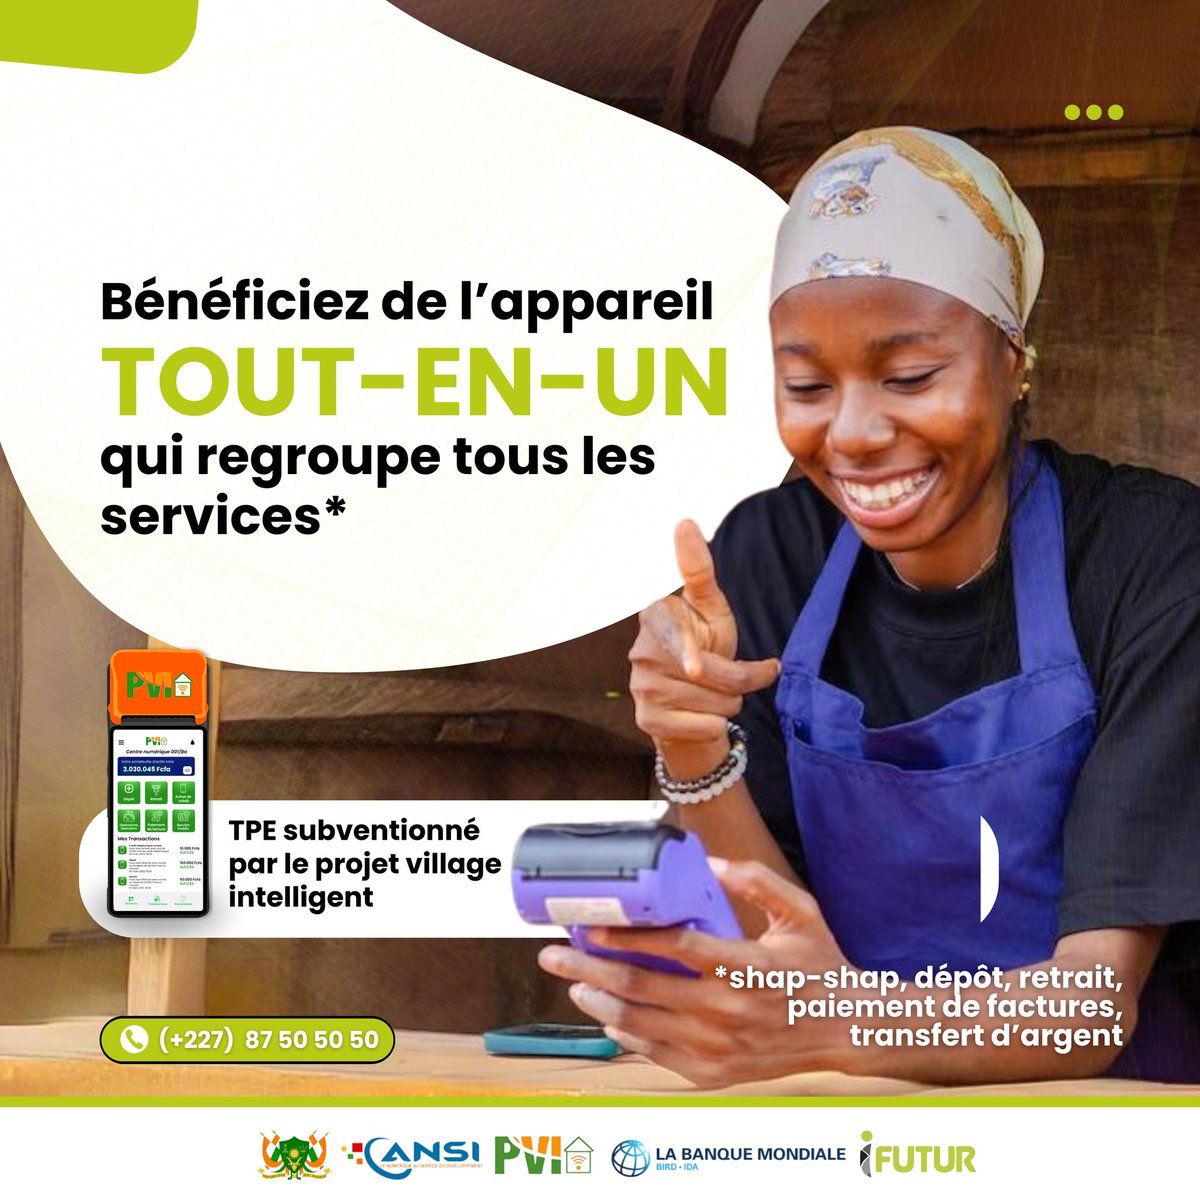 Avec un seul appareil dédié, offrez divers services (mobile money, shap-shap, paiement de factures, transfert d'argent...) et gagnez plus d'argent. (1/2)

#PVI #Zérocash #Banquemondiale